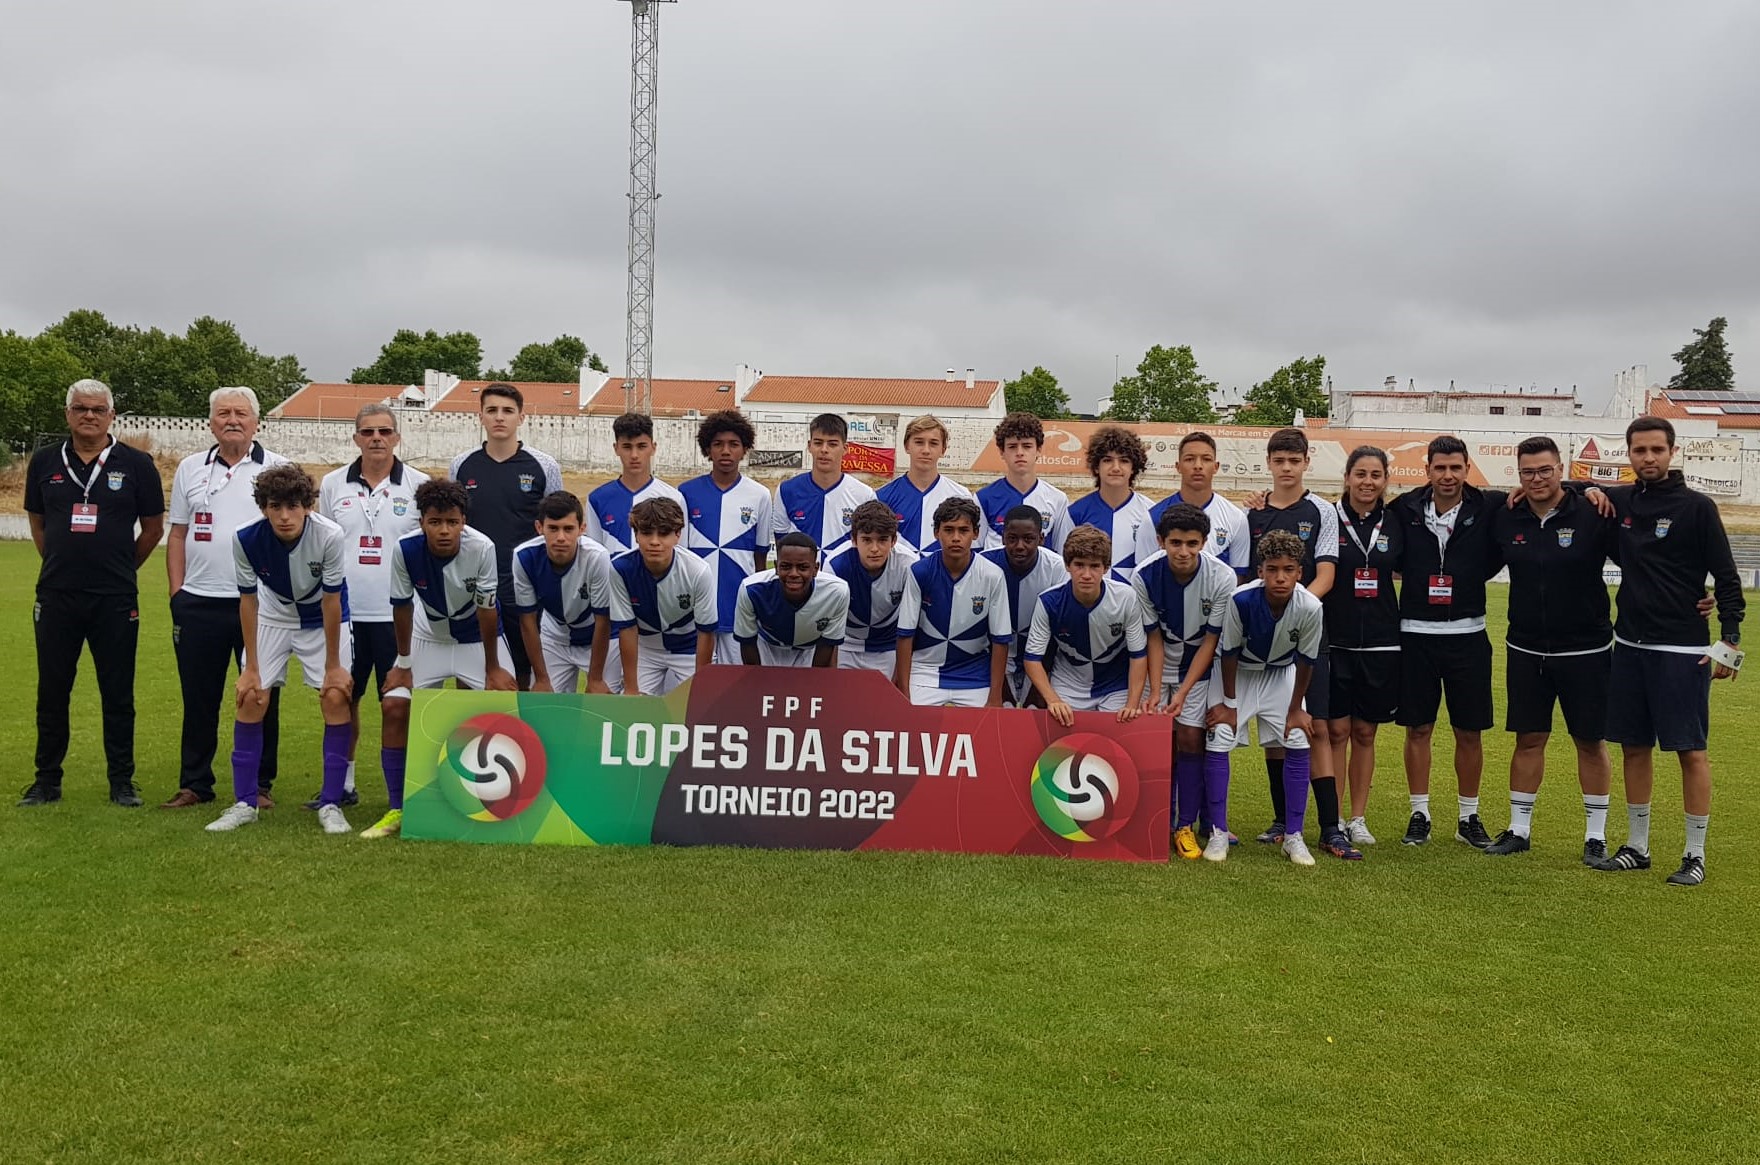 Vitória com encanto da Seleção da AF Setúbal na despedida do Lopes da Silva 